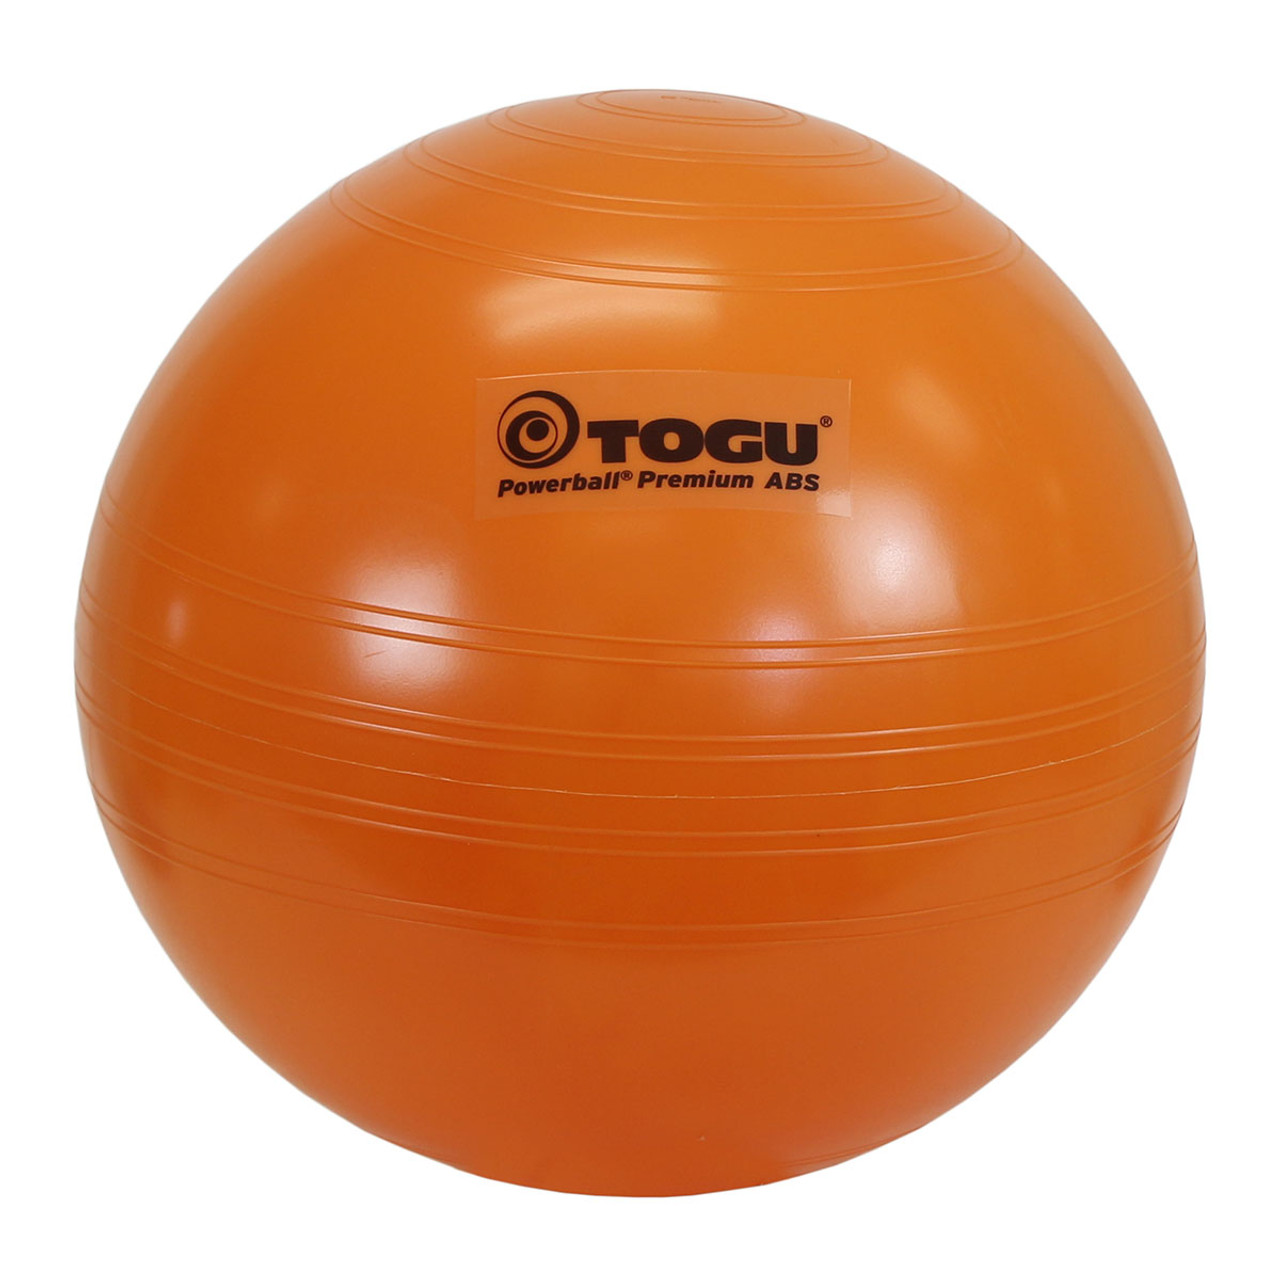 TOGU¨ Powerball¨ Premium ABS¨, 55 cm (22 in), orange